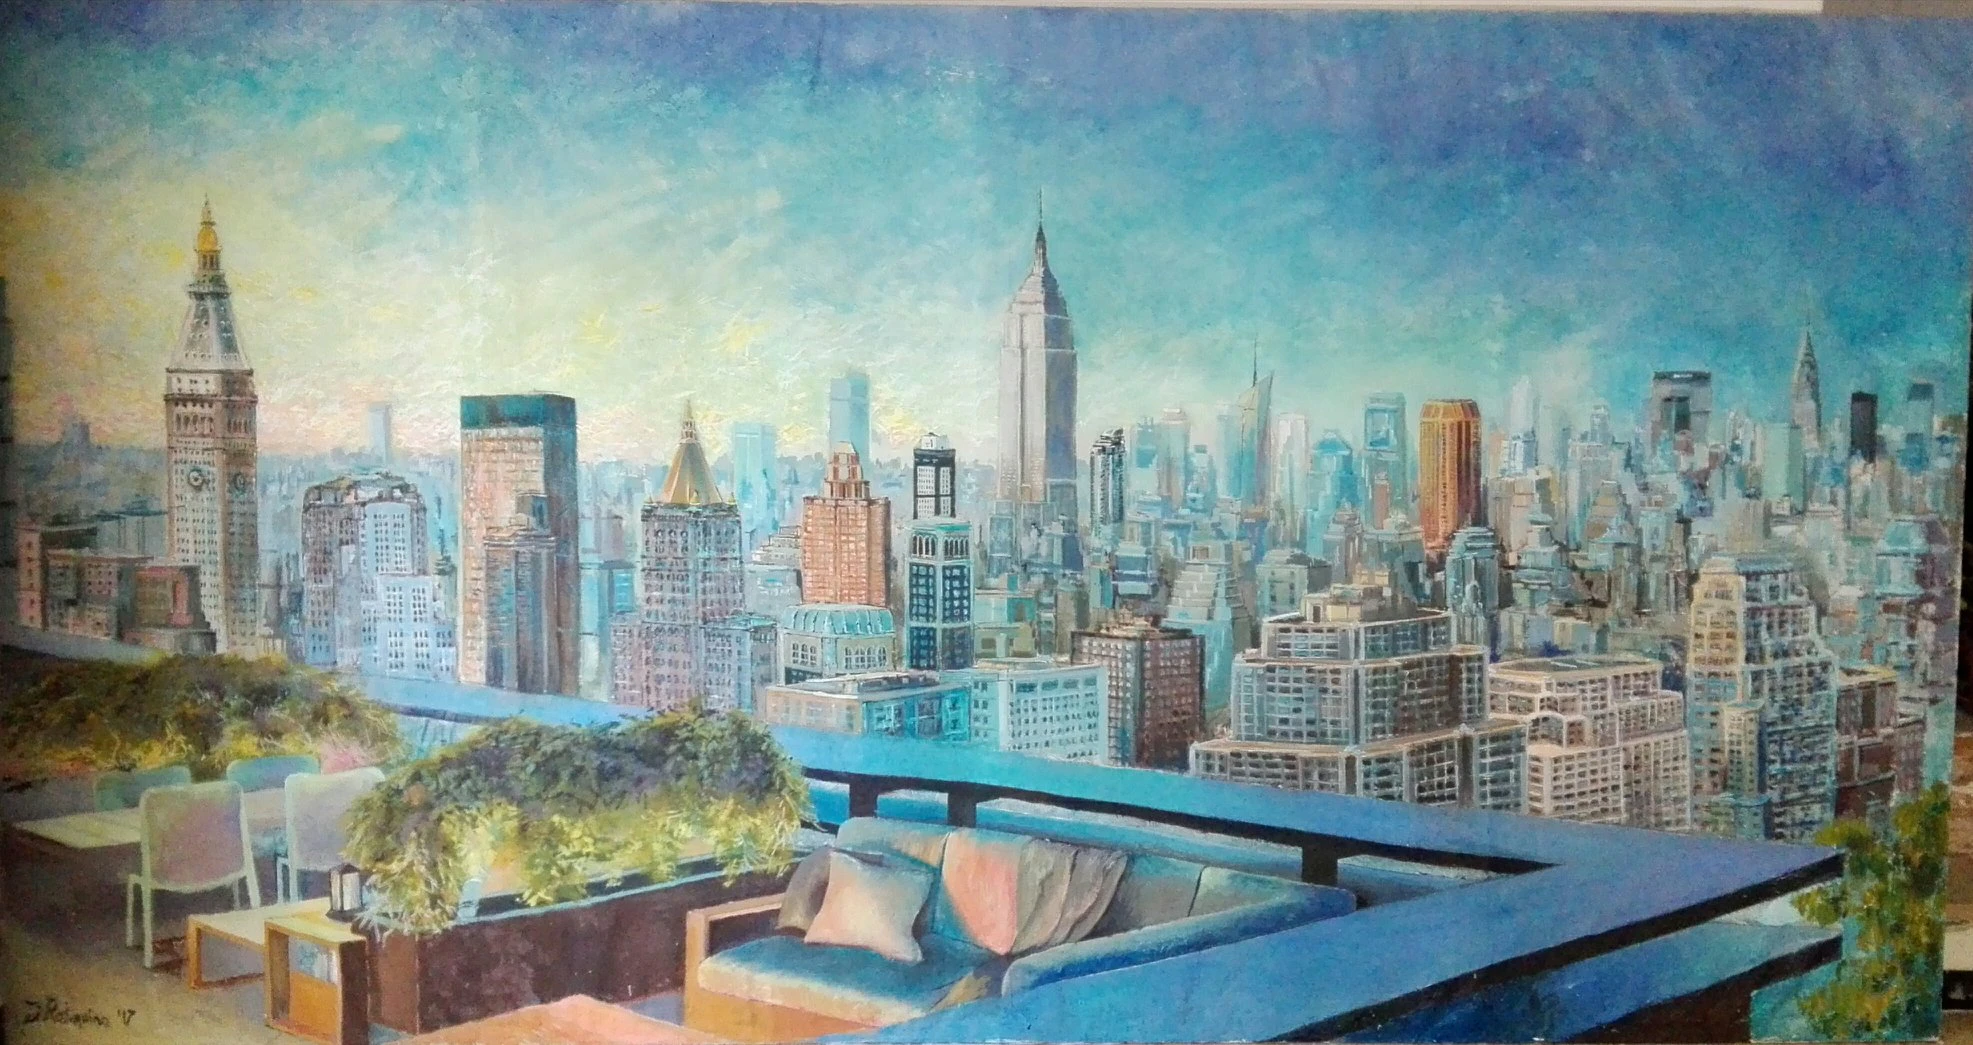 Acrylic on canvas ," Manhattan Skyline "